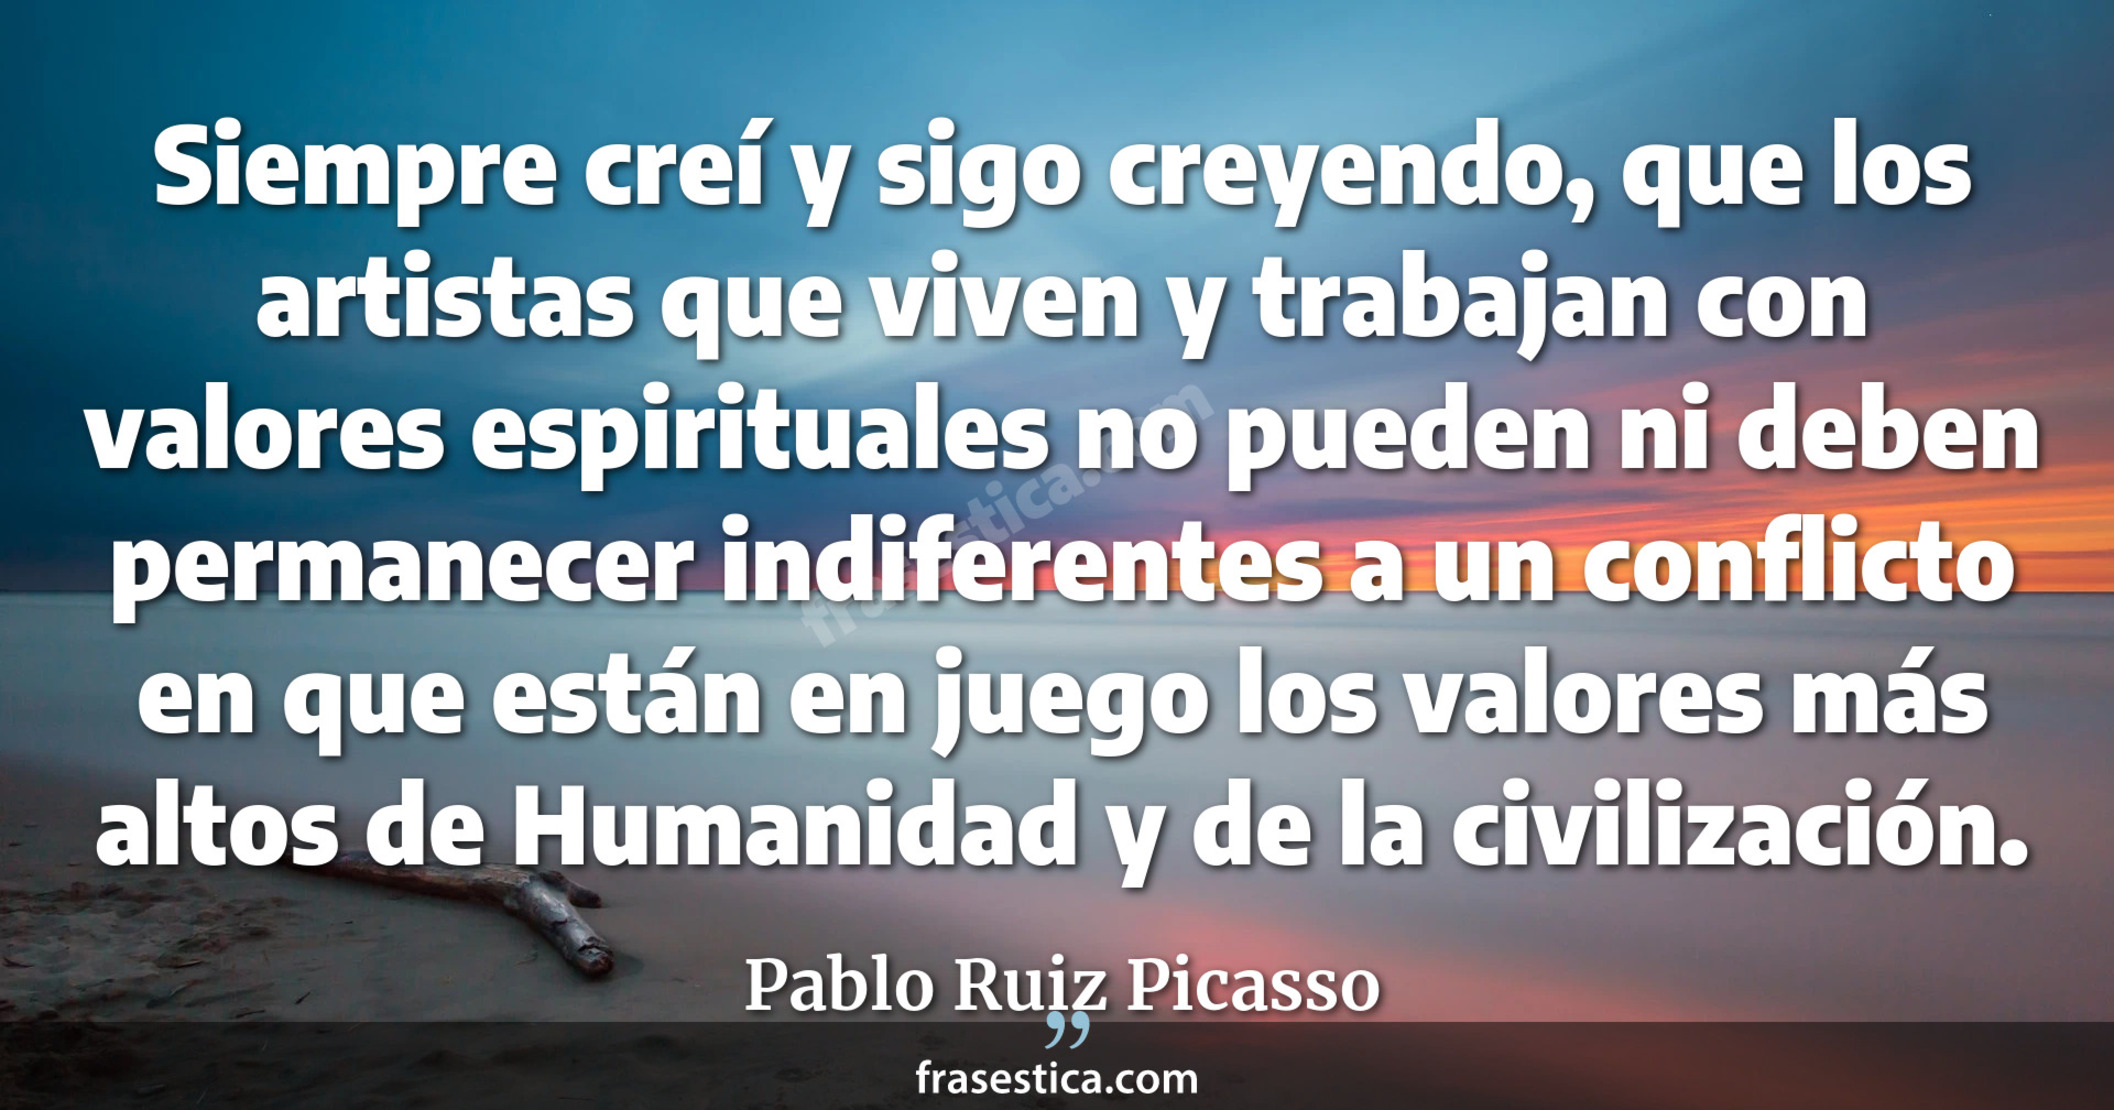 Siempre creí y sigo creyendo, que los artistas que viven y trabajan con valores espirituales no pueden ni deben permanecer indiferentes a un conflicto en que están en juego los valores más altos de Humanidad y de la civilización. - Pablo Ruiz Picasso